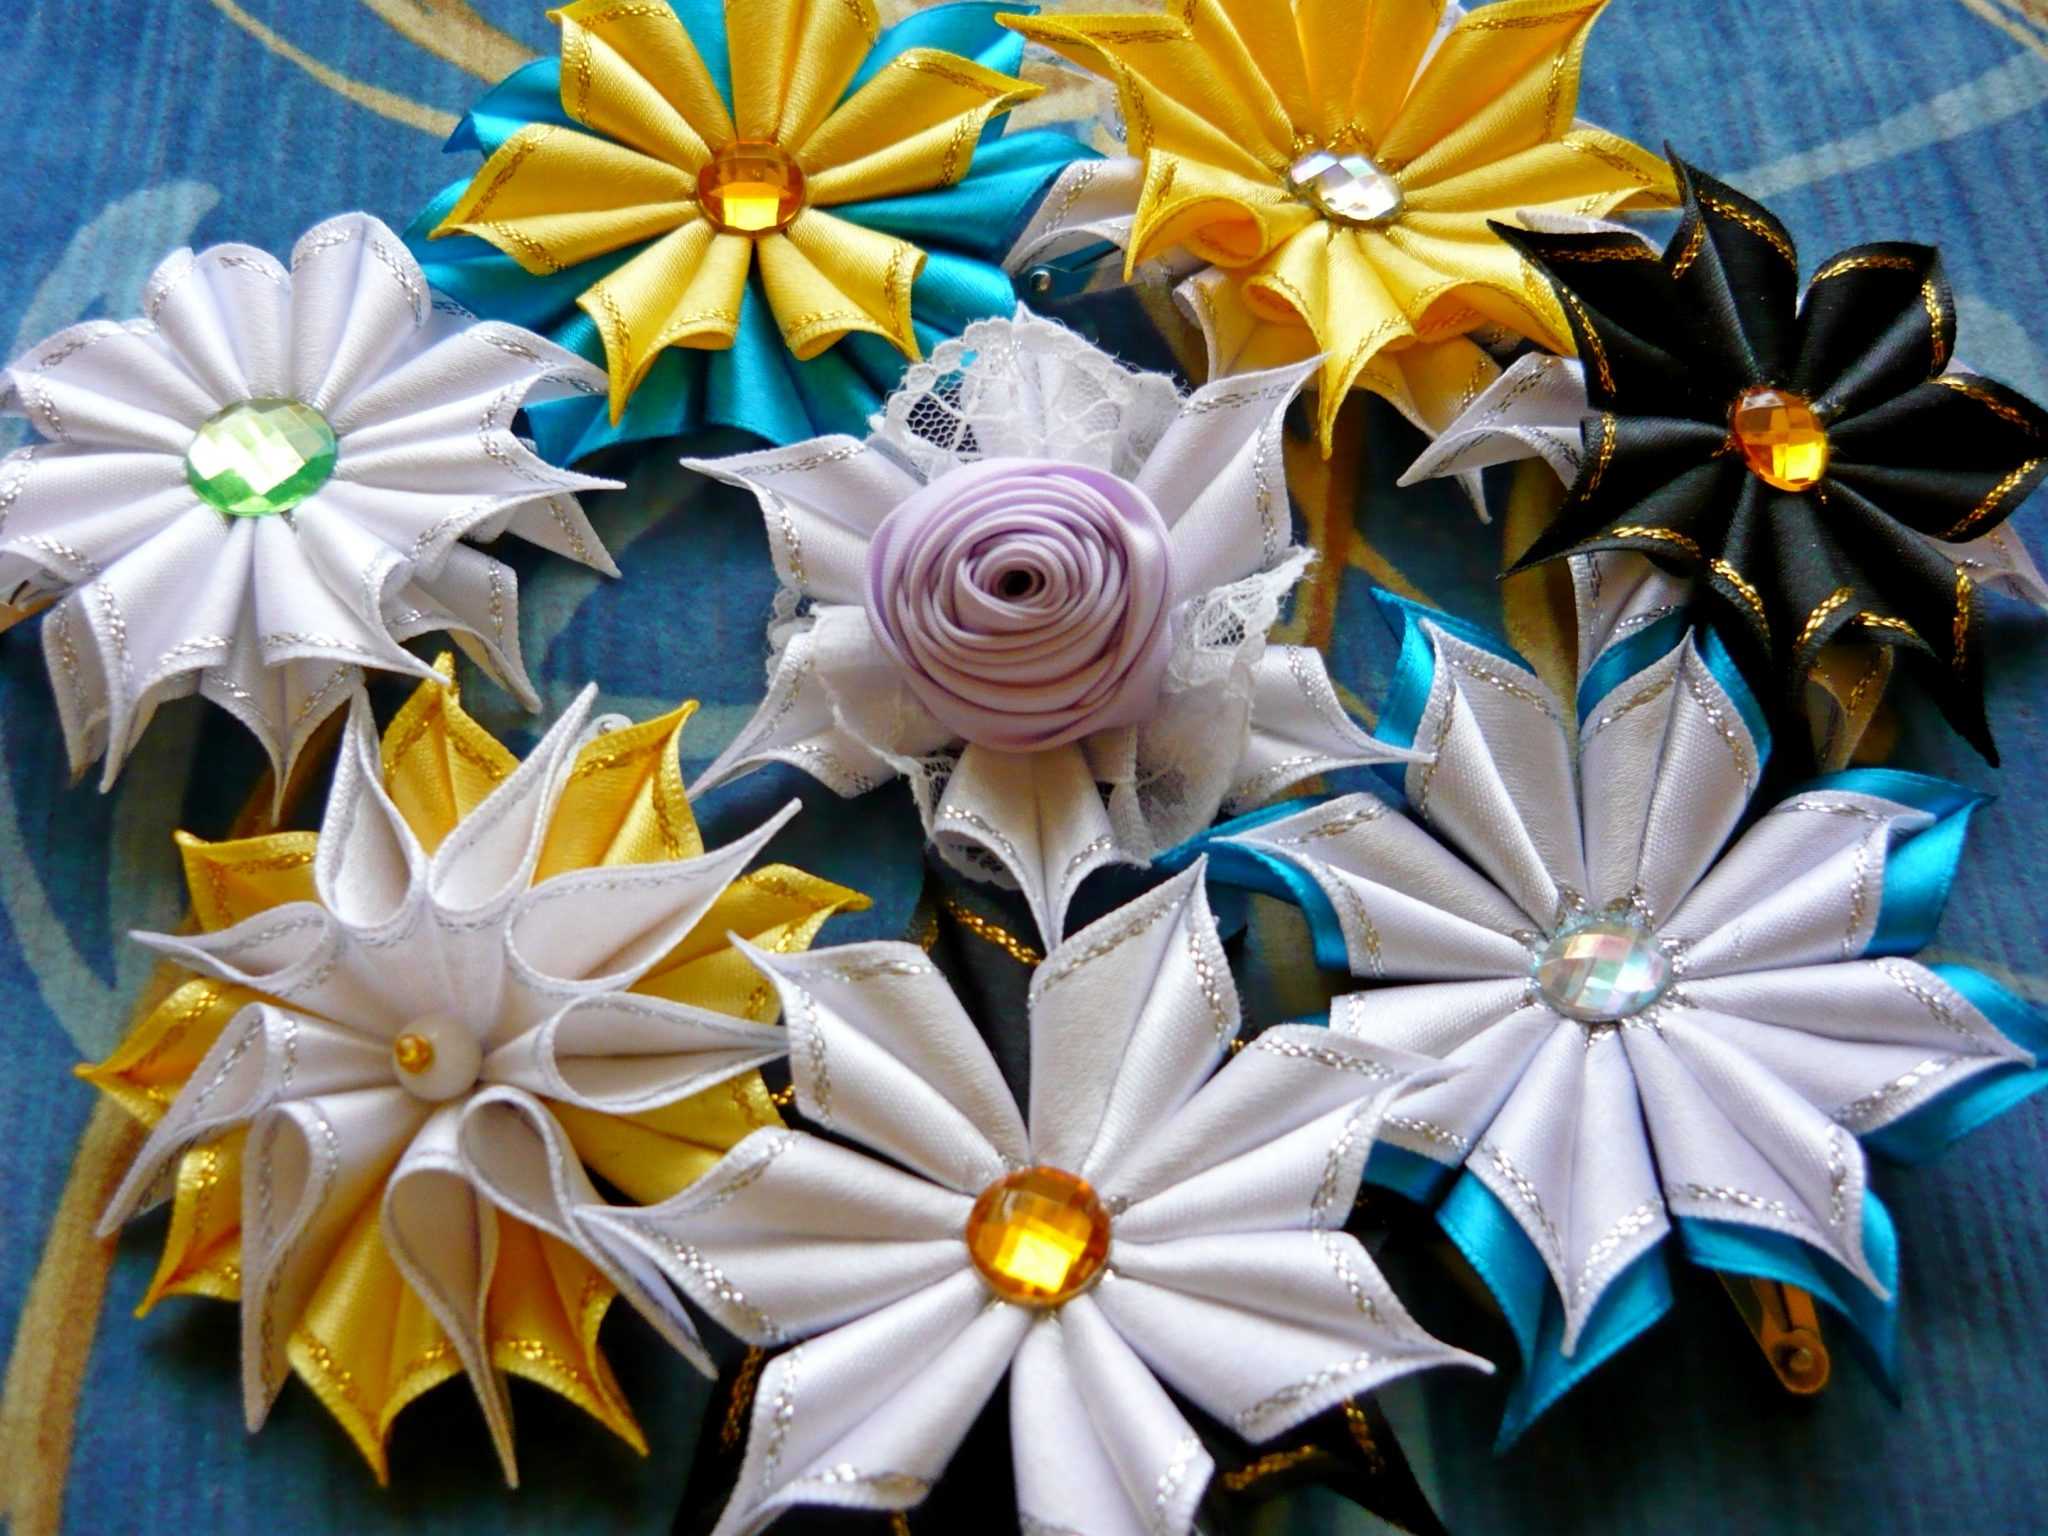 Цветы из лент своими руками: пошаговая инструкция по изготовлению роз и других элементов декора